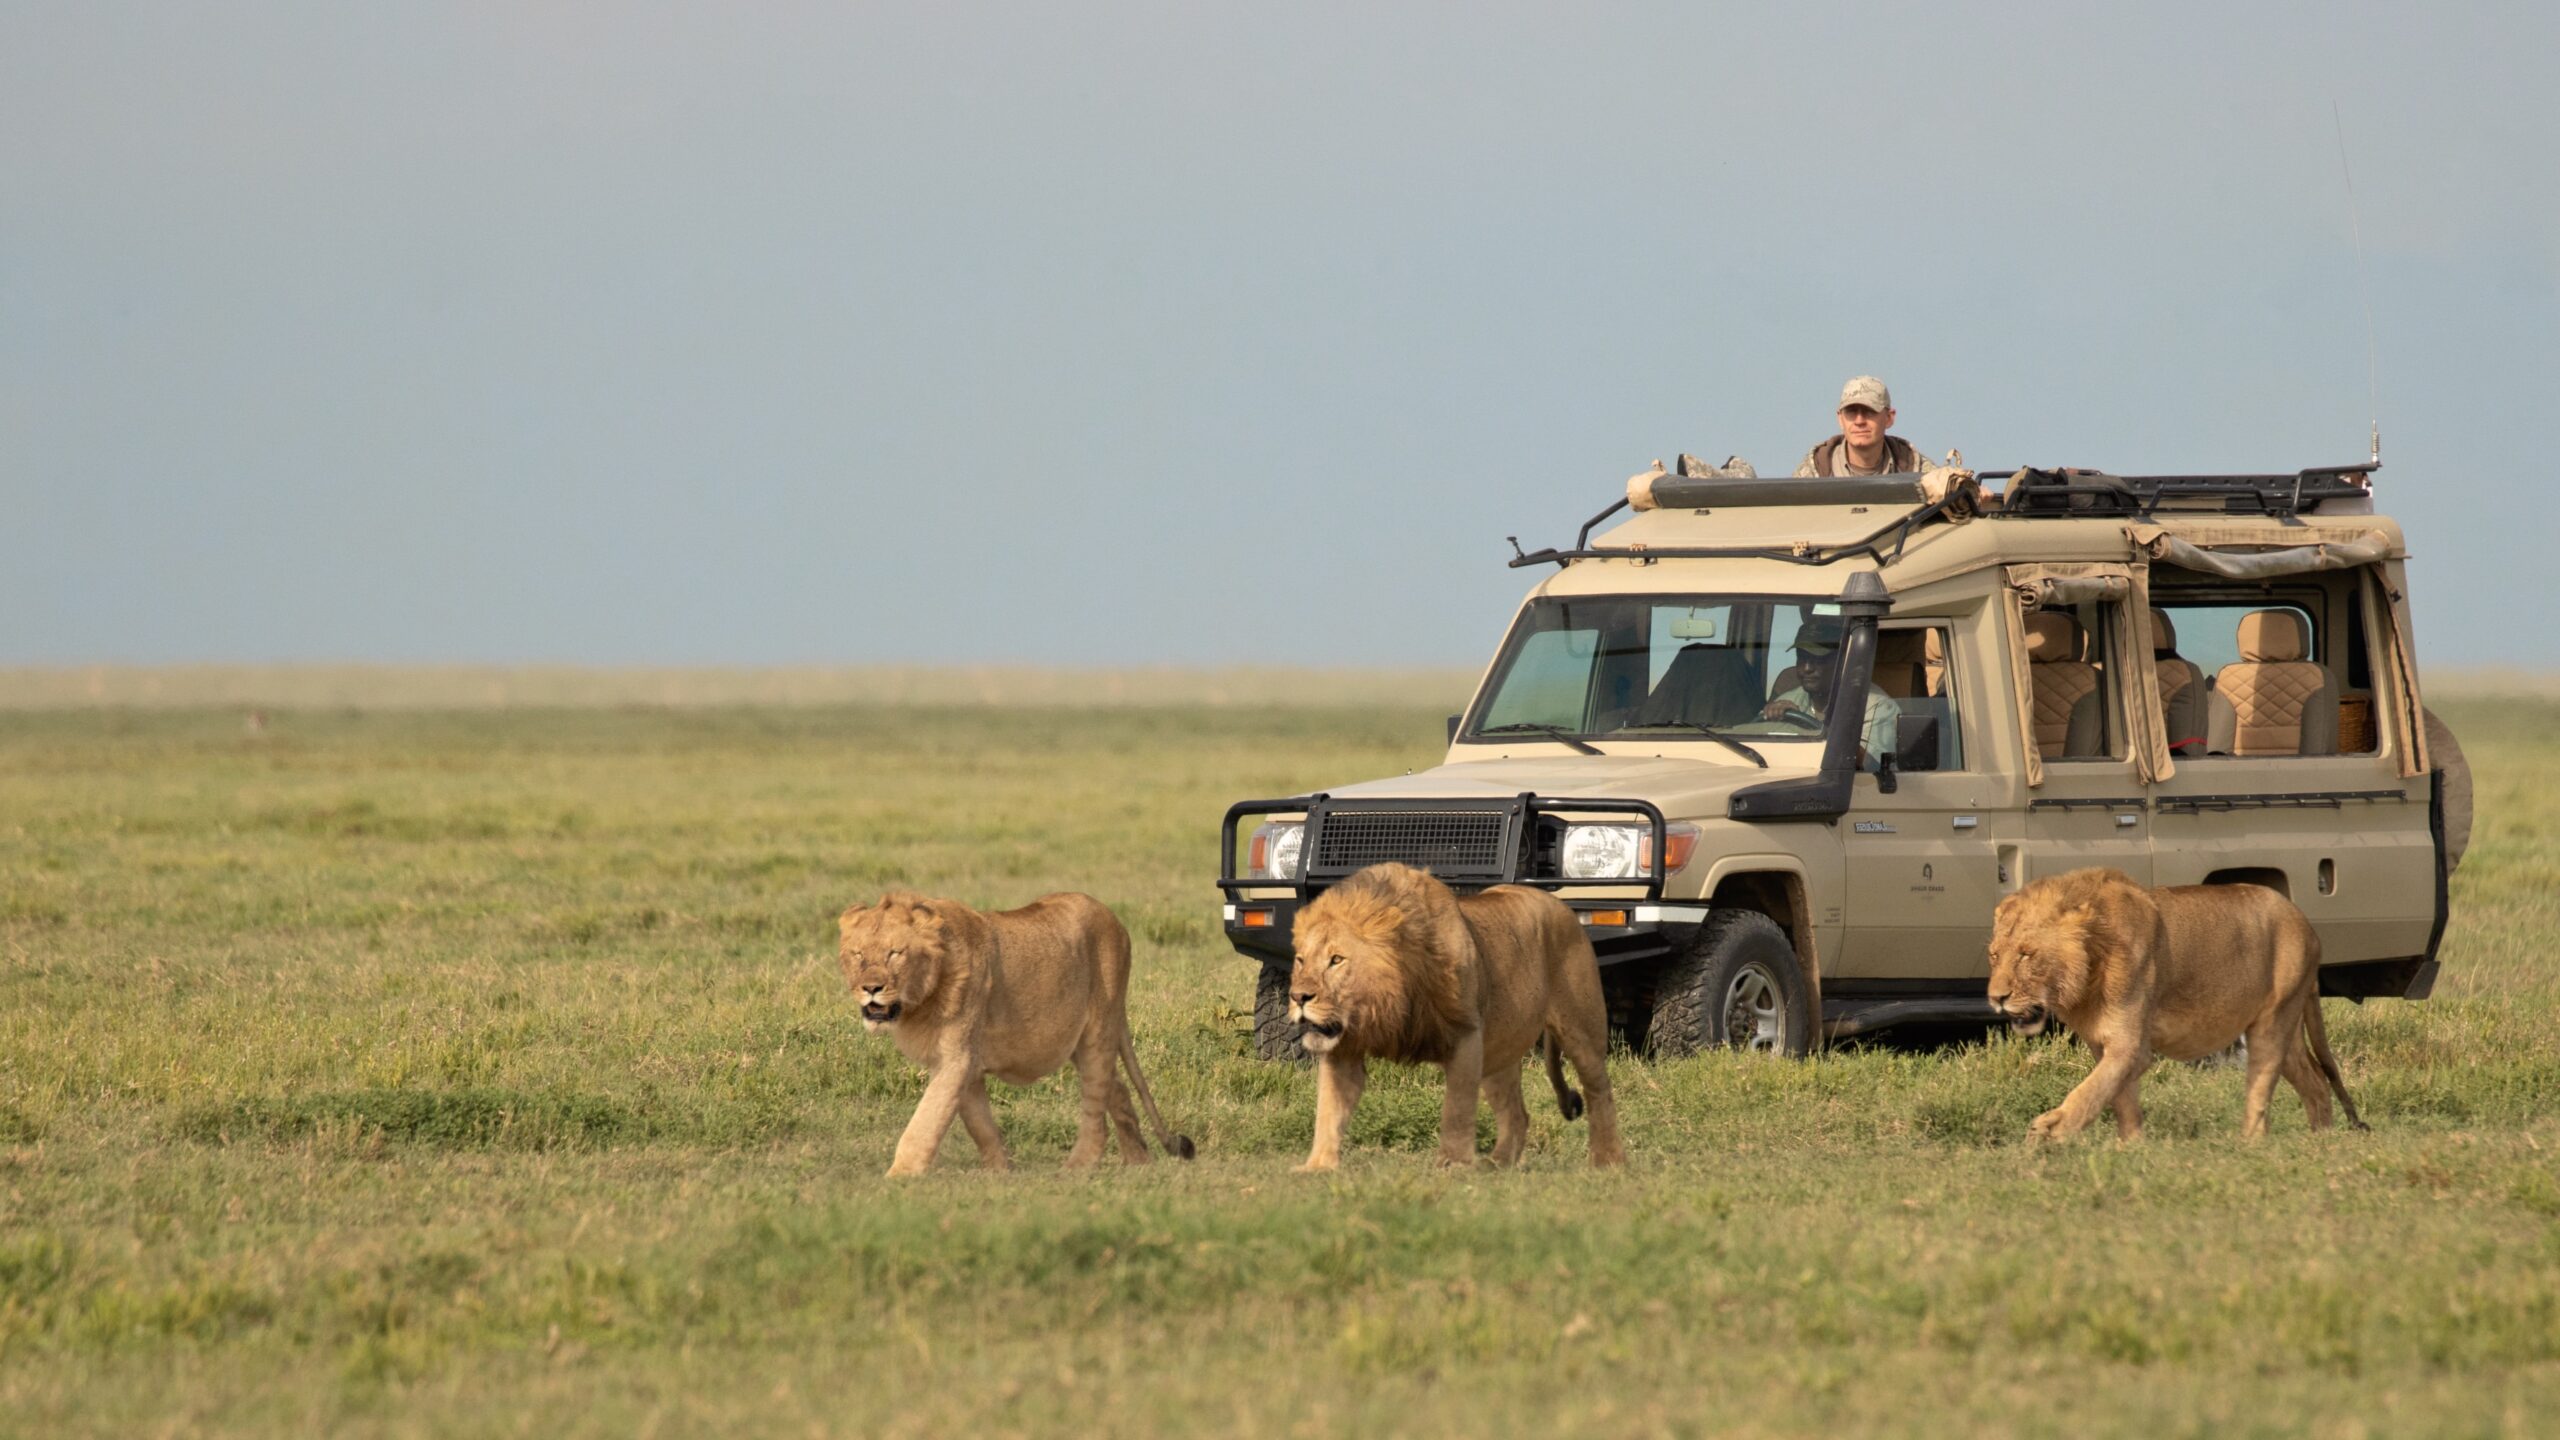 Serengeti national park